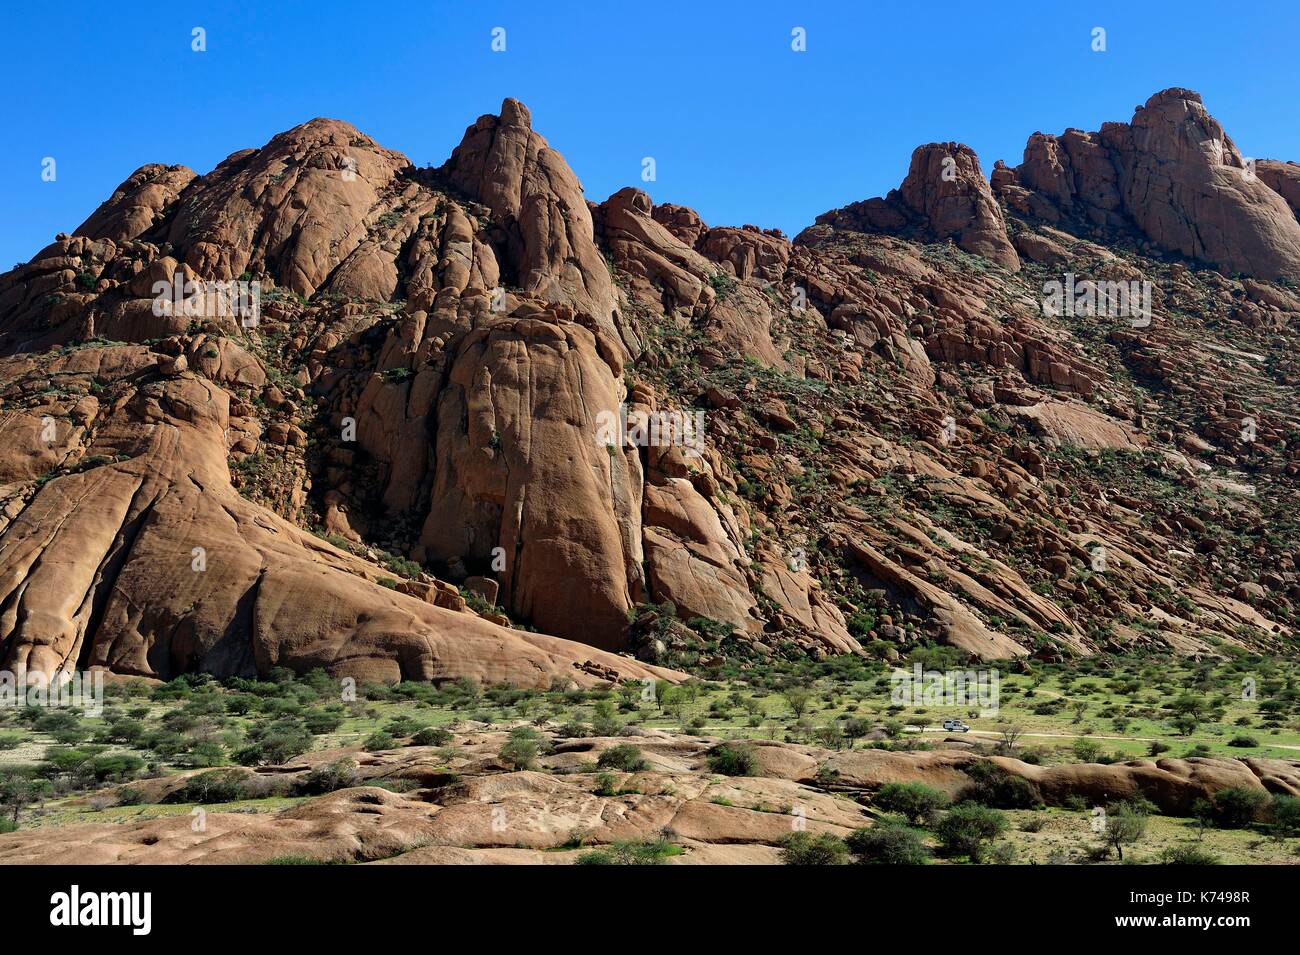 Namibia, Erongo region, Damaraland, the Great Spitzkoppe or Spitzkop (1784 m), granite mountain in the Namib Desert Stock Photo